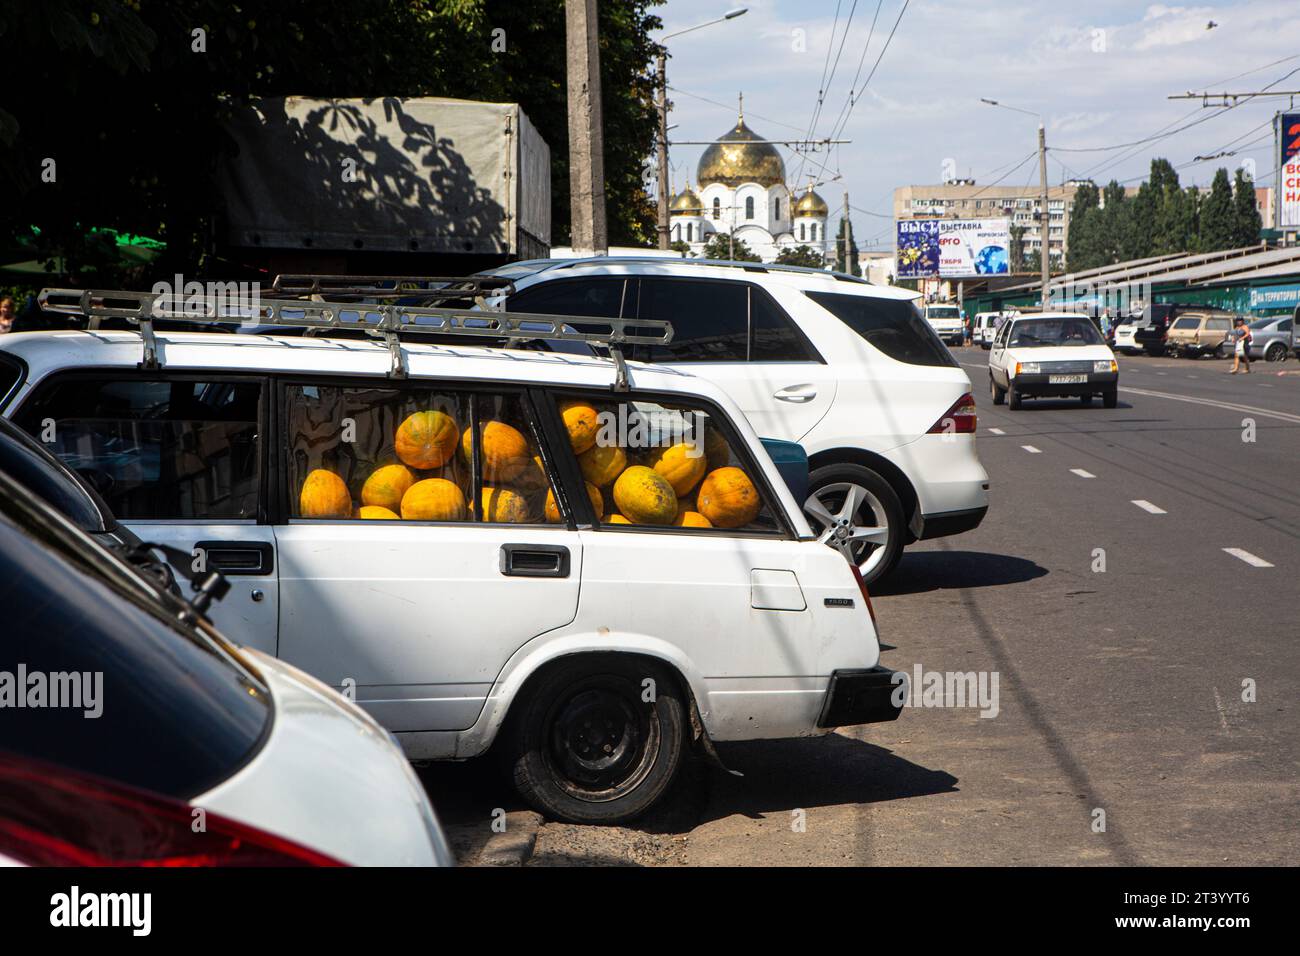 Voitures garées près du marché alimentaire à Odessa, Ukraine. Old Lada entièrement chargée de melons, donc les roues du véhicule s'affaissent, c'est août et les agriculteurs se dépêchent Banque D'Images